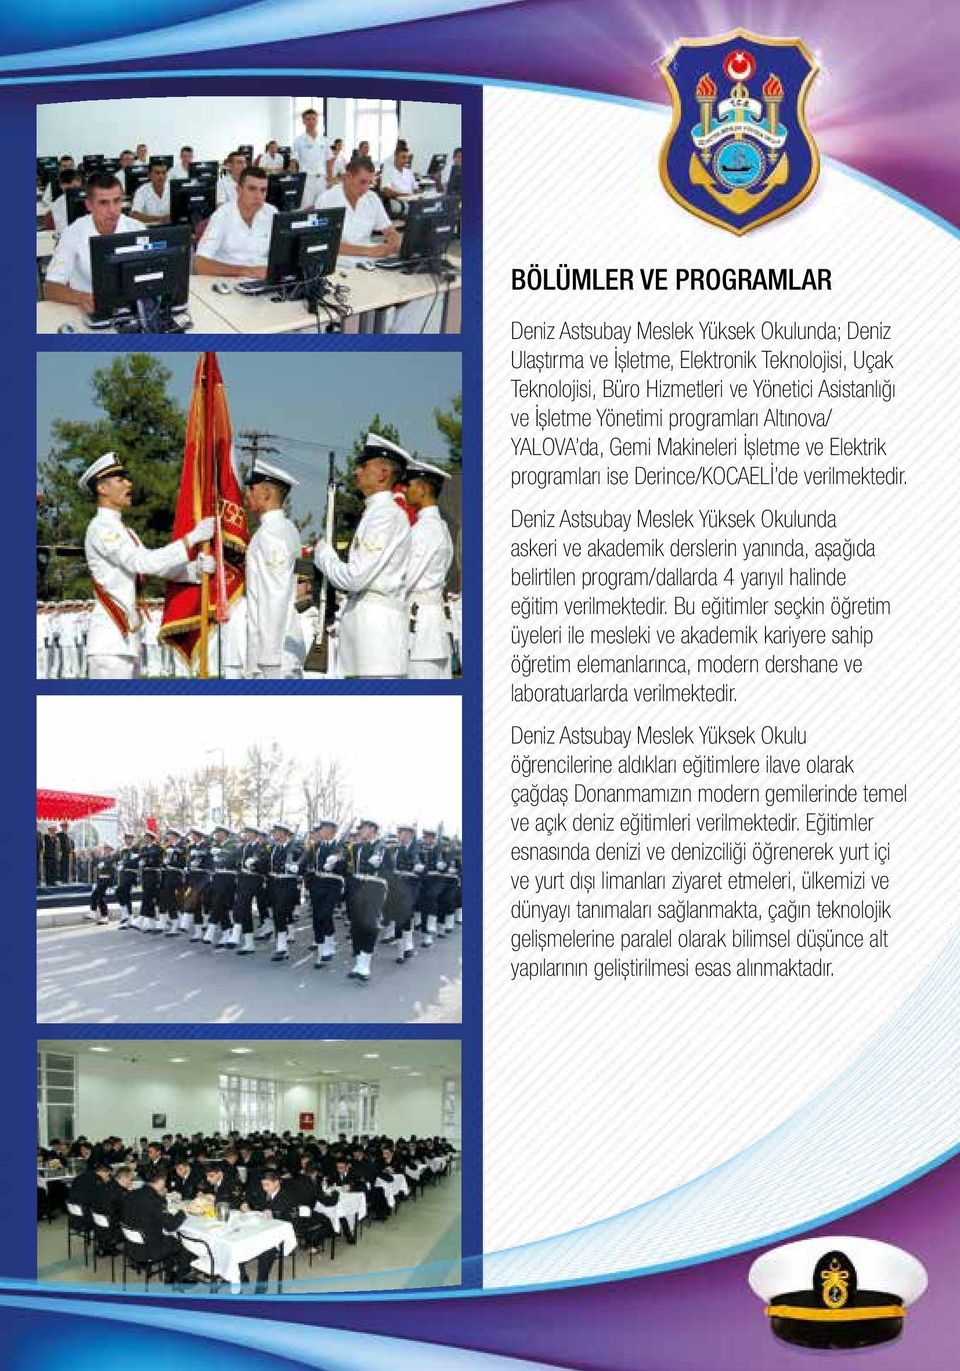 Deniz Astsubay Meslek Yüksek Okulunda askeri ve akademik derslerin yanında, aşağıda belirtilen program/dallarda 4 yarıyıl halinde eğitim verilmektedir.